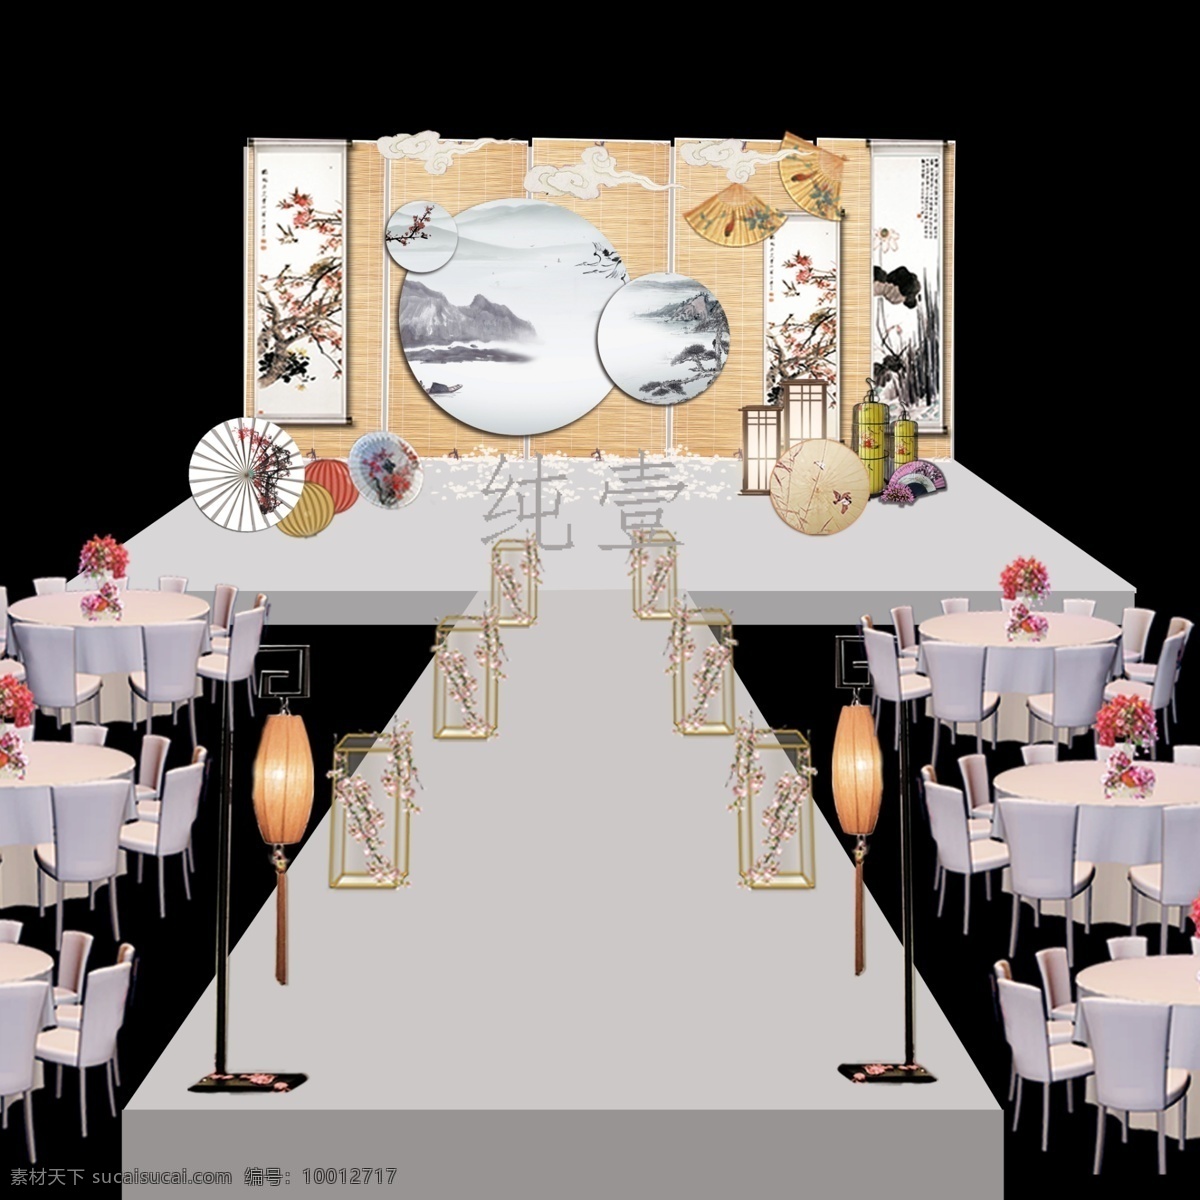 新 中式 室内 婚礼 效果图 方案 新中式 舞台设计 背景效果 t台 路引